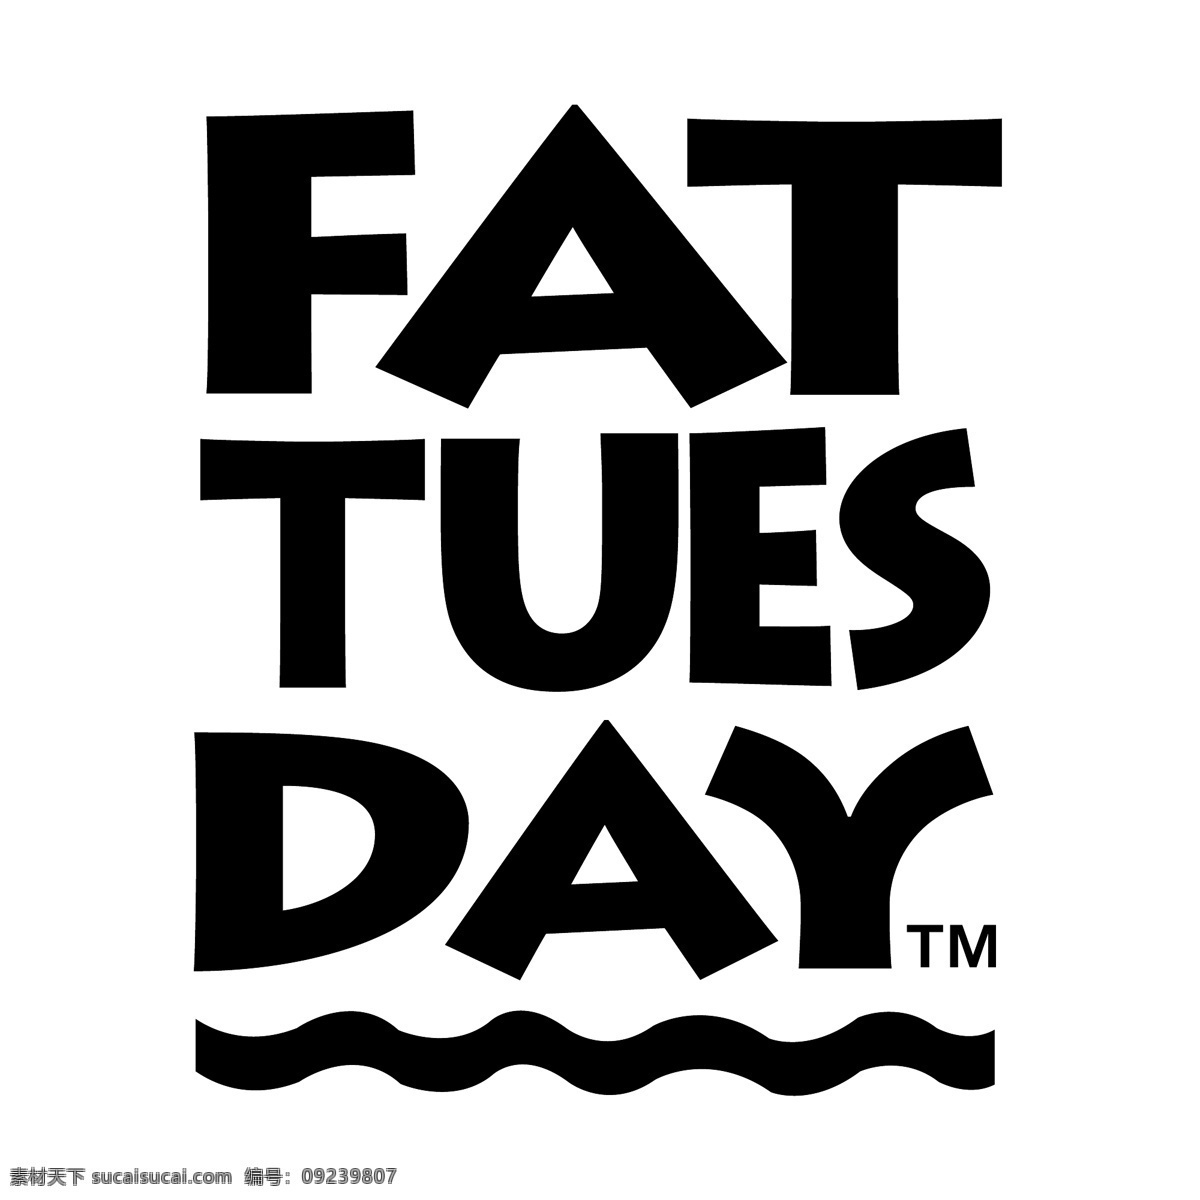 星期二0脂肪 胖 胖的星期二 星期二 矢量 脂肪 脂肪游离脂肪 向量 向量的脂肪 免费的脂肪 脂肪的矢量 无脂肪 脂肪免费矢量 蓝色